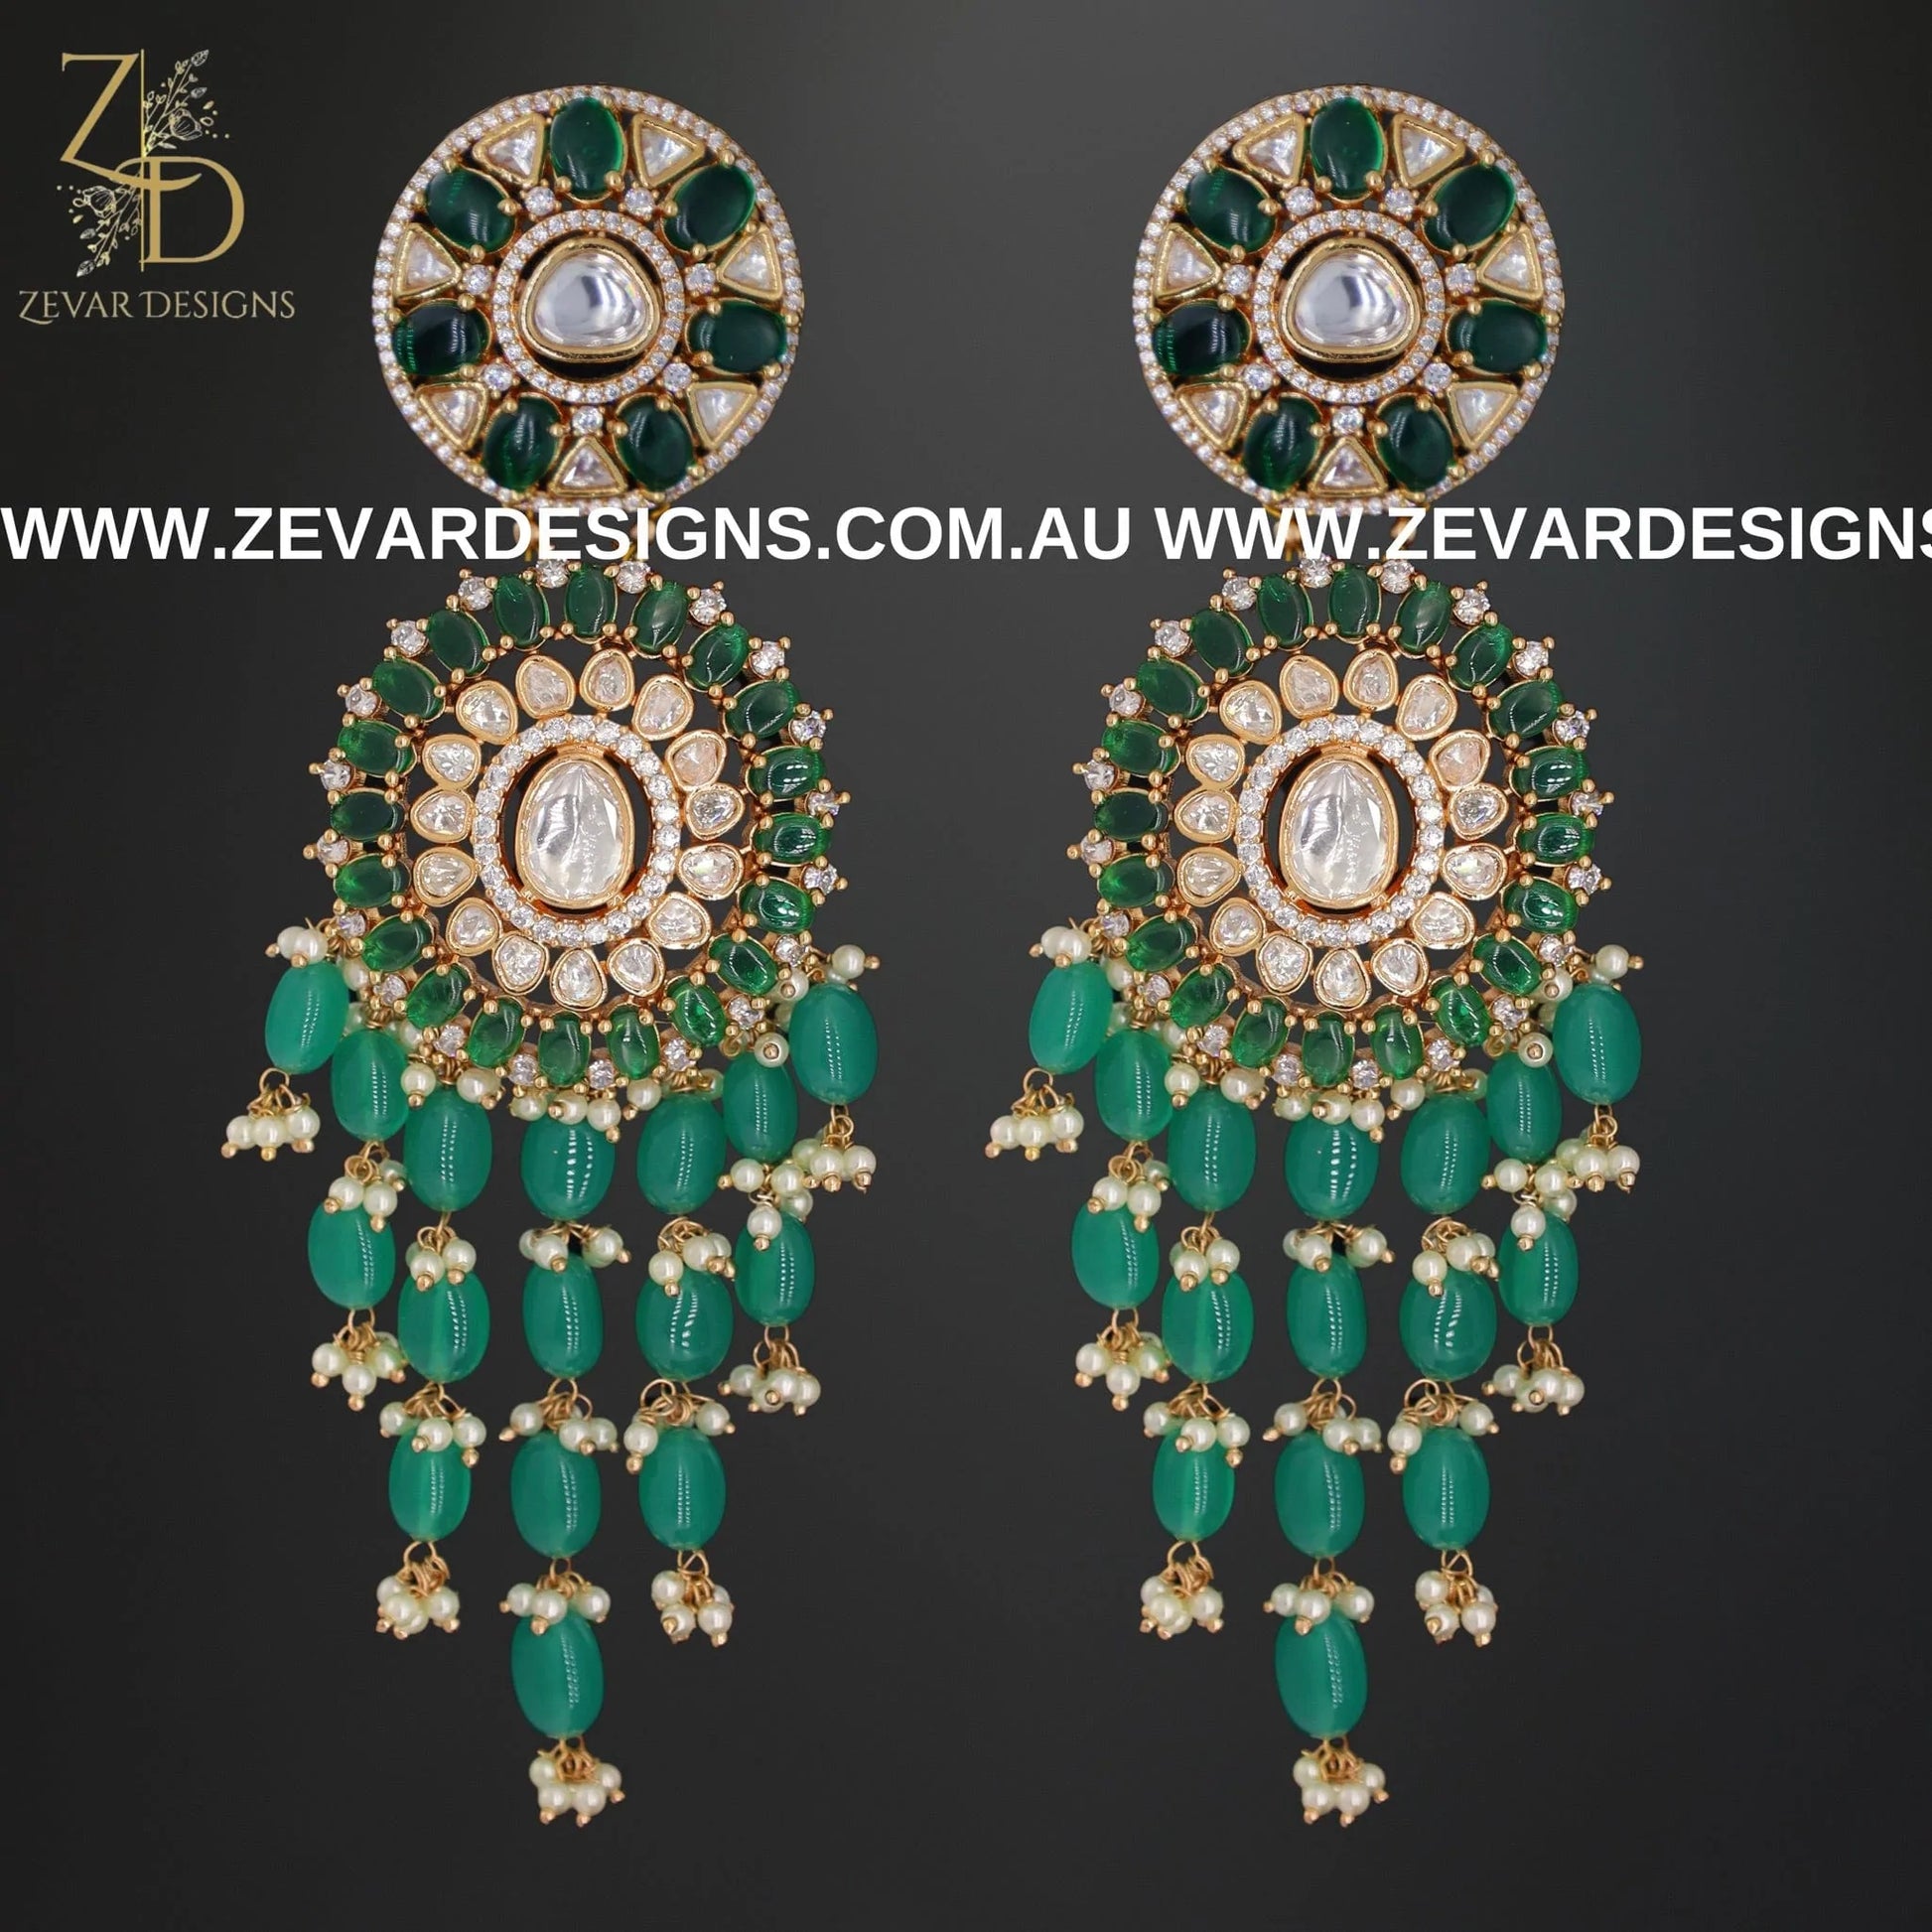 Zevar Designs Long Necklace Sets Kundan Polki Long Set - Emerald Green and Rose Gold